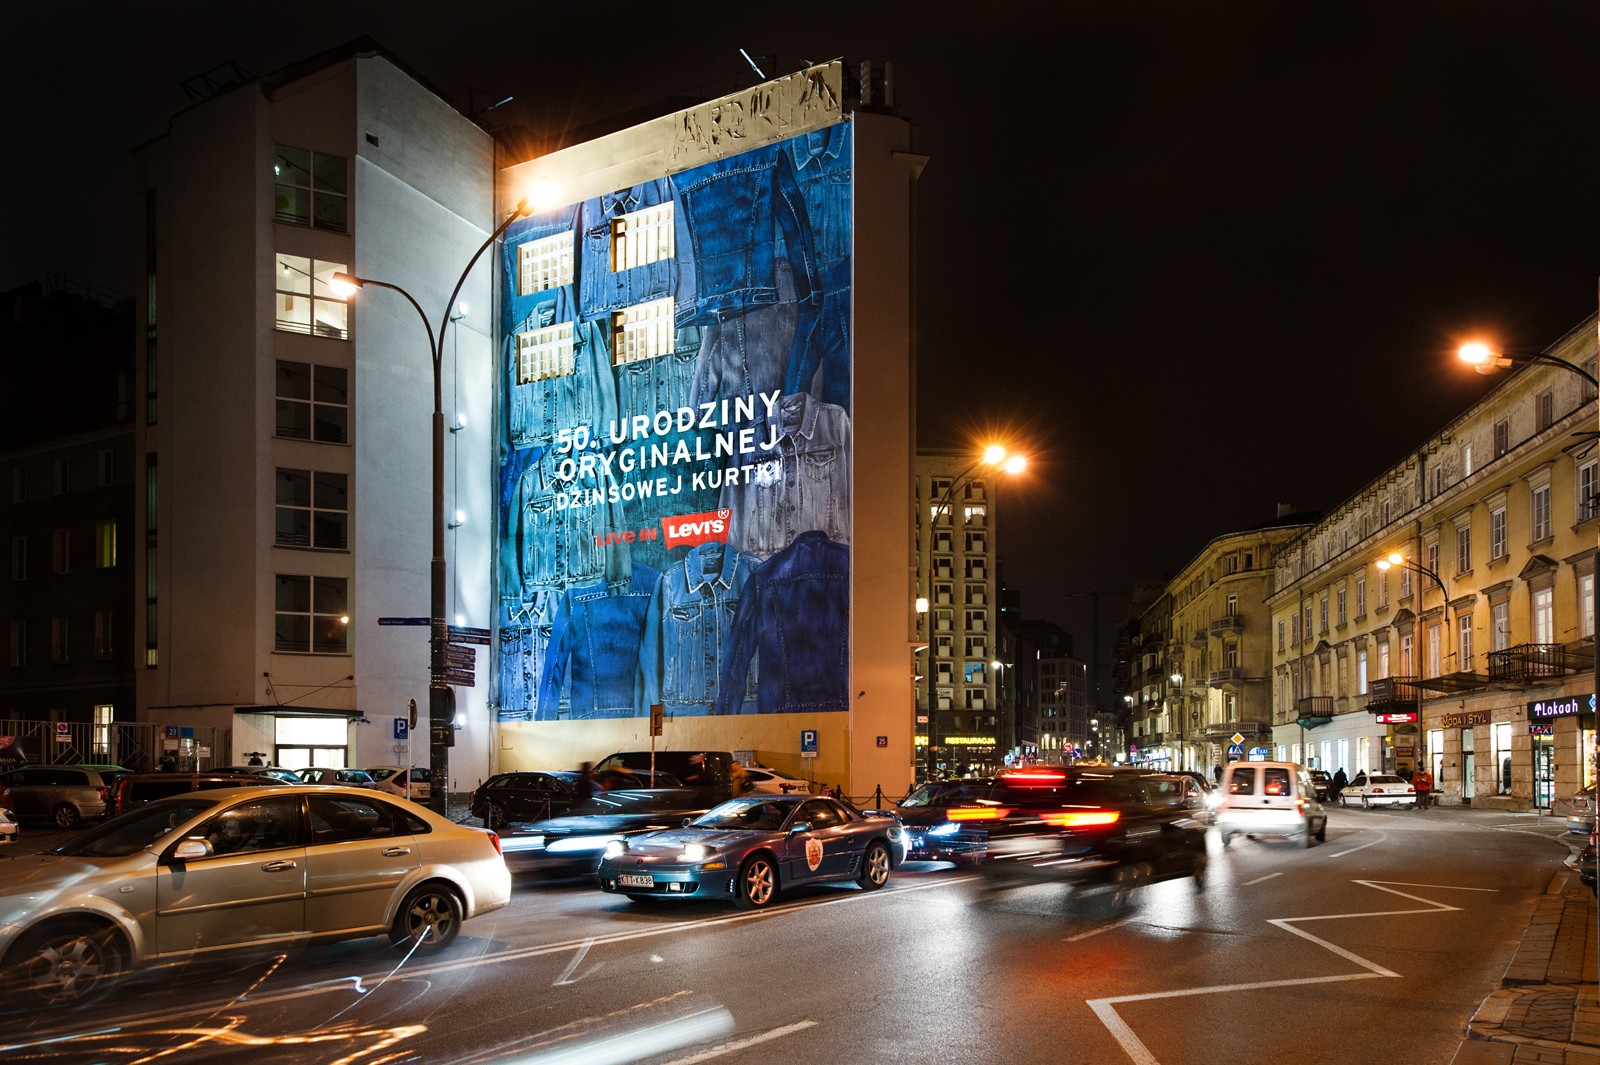 Werbemural im Auftrag von Levis an der Wand in der Bracka Straße in Warschau | 50.URODZINY ORYGINALNEJ DŻINSOWEJ KURTKI | Portfolio